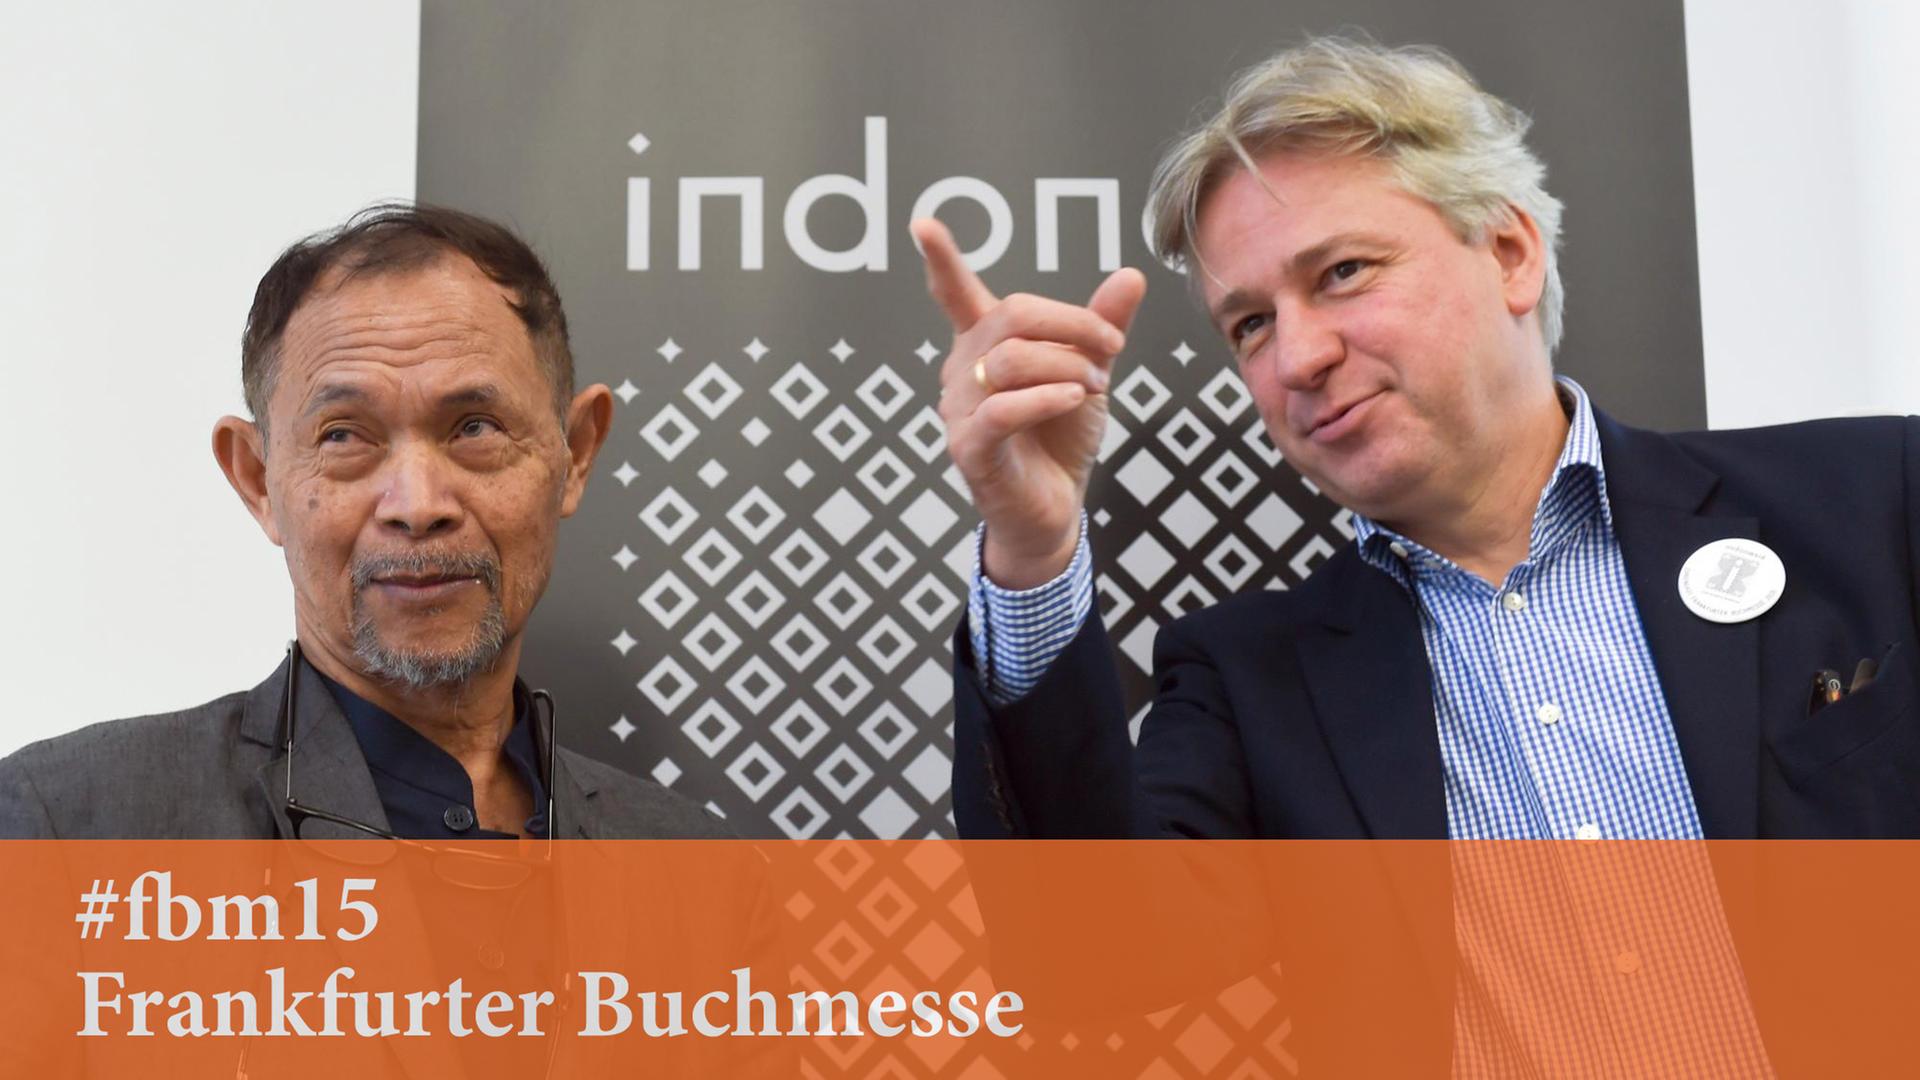 Der indonesische Autor Goenawan Mohamad mit dem Direktor der Buchmesse Jürgen Boos